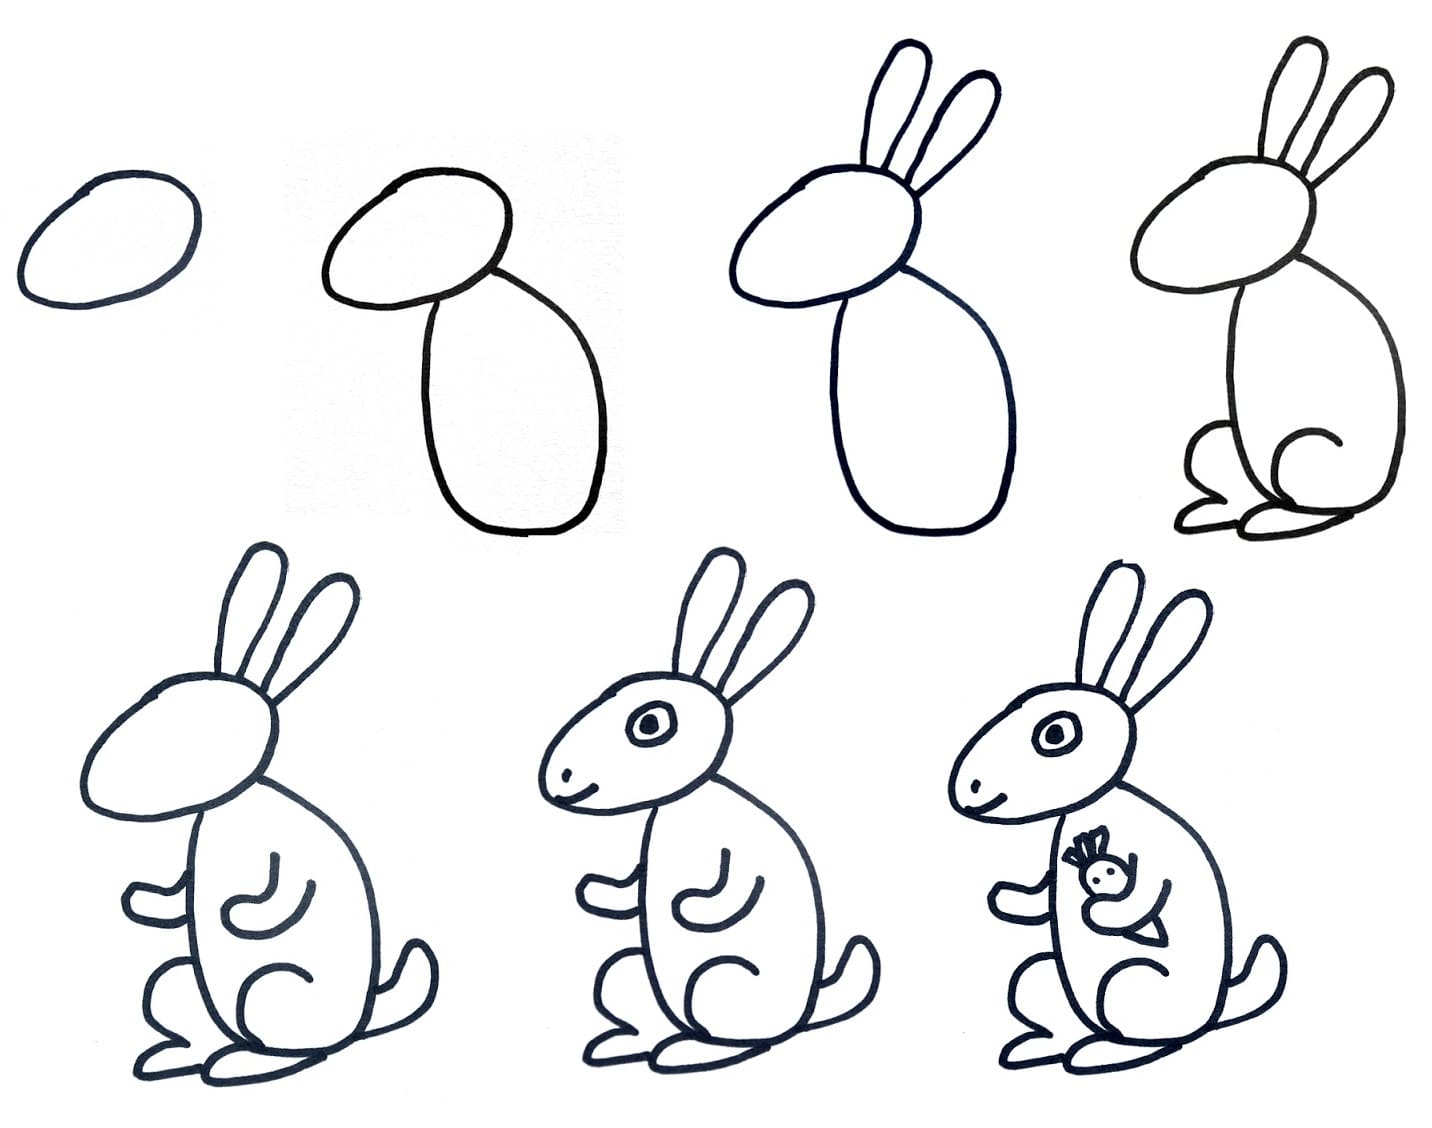 Tranh tô màu: Con thỏ | Mầm Non Tràng An